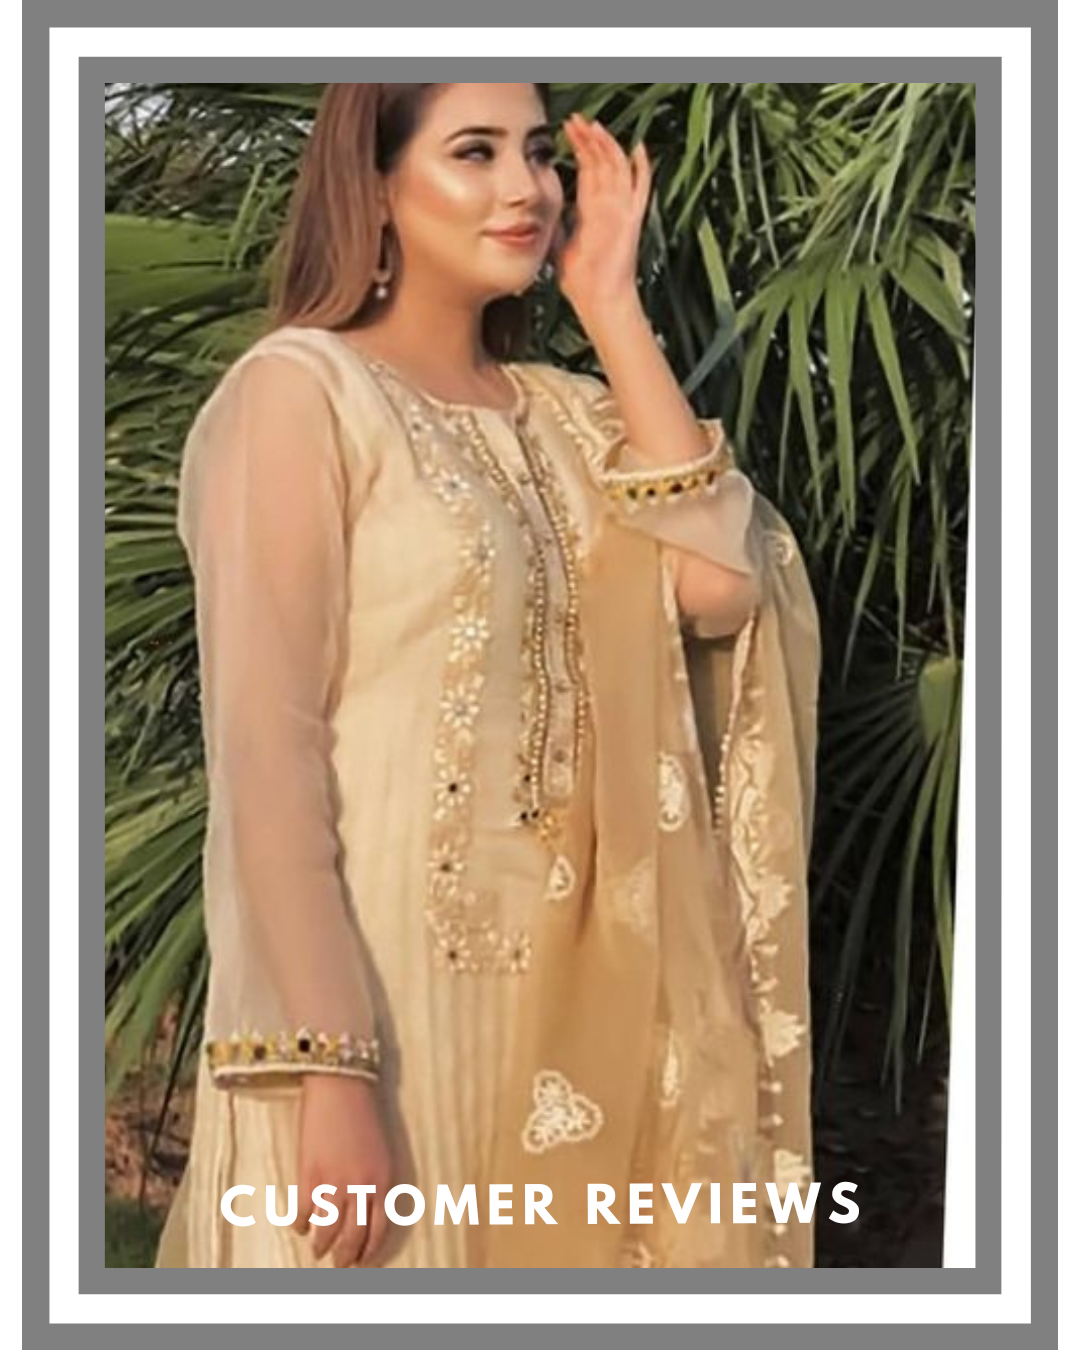 salwar mahal customer reviews and ratings